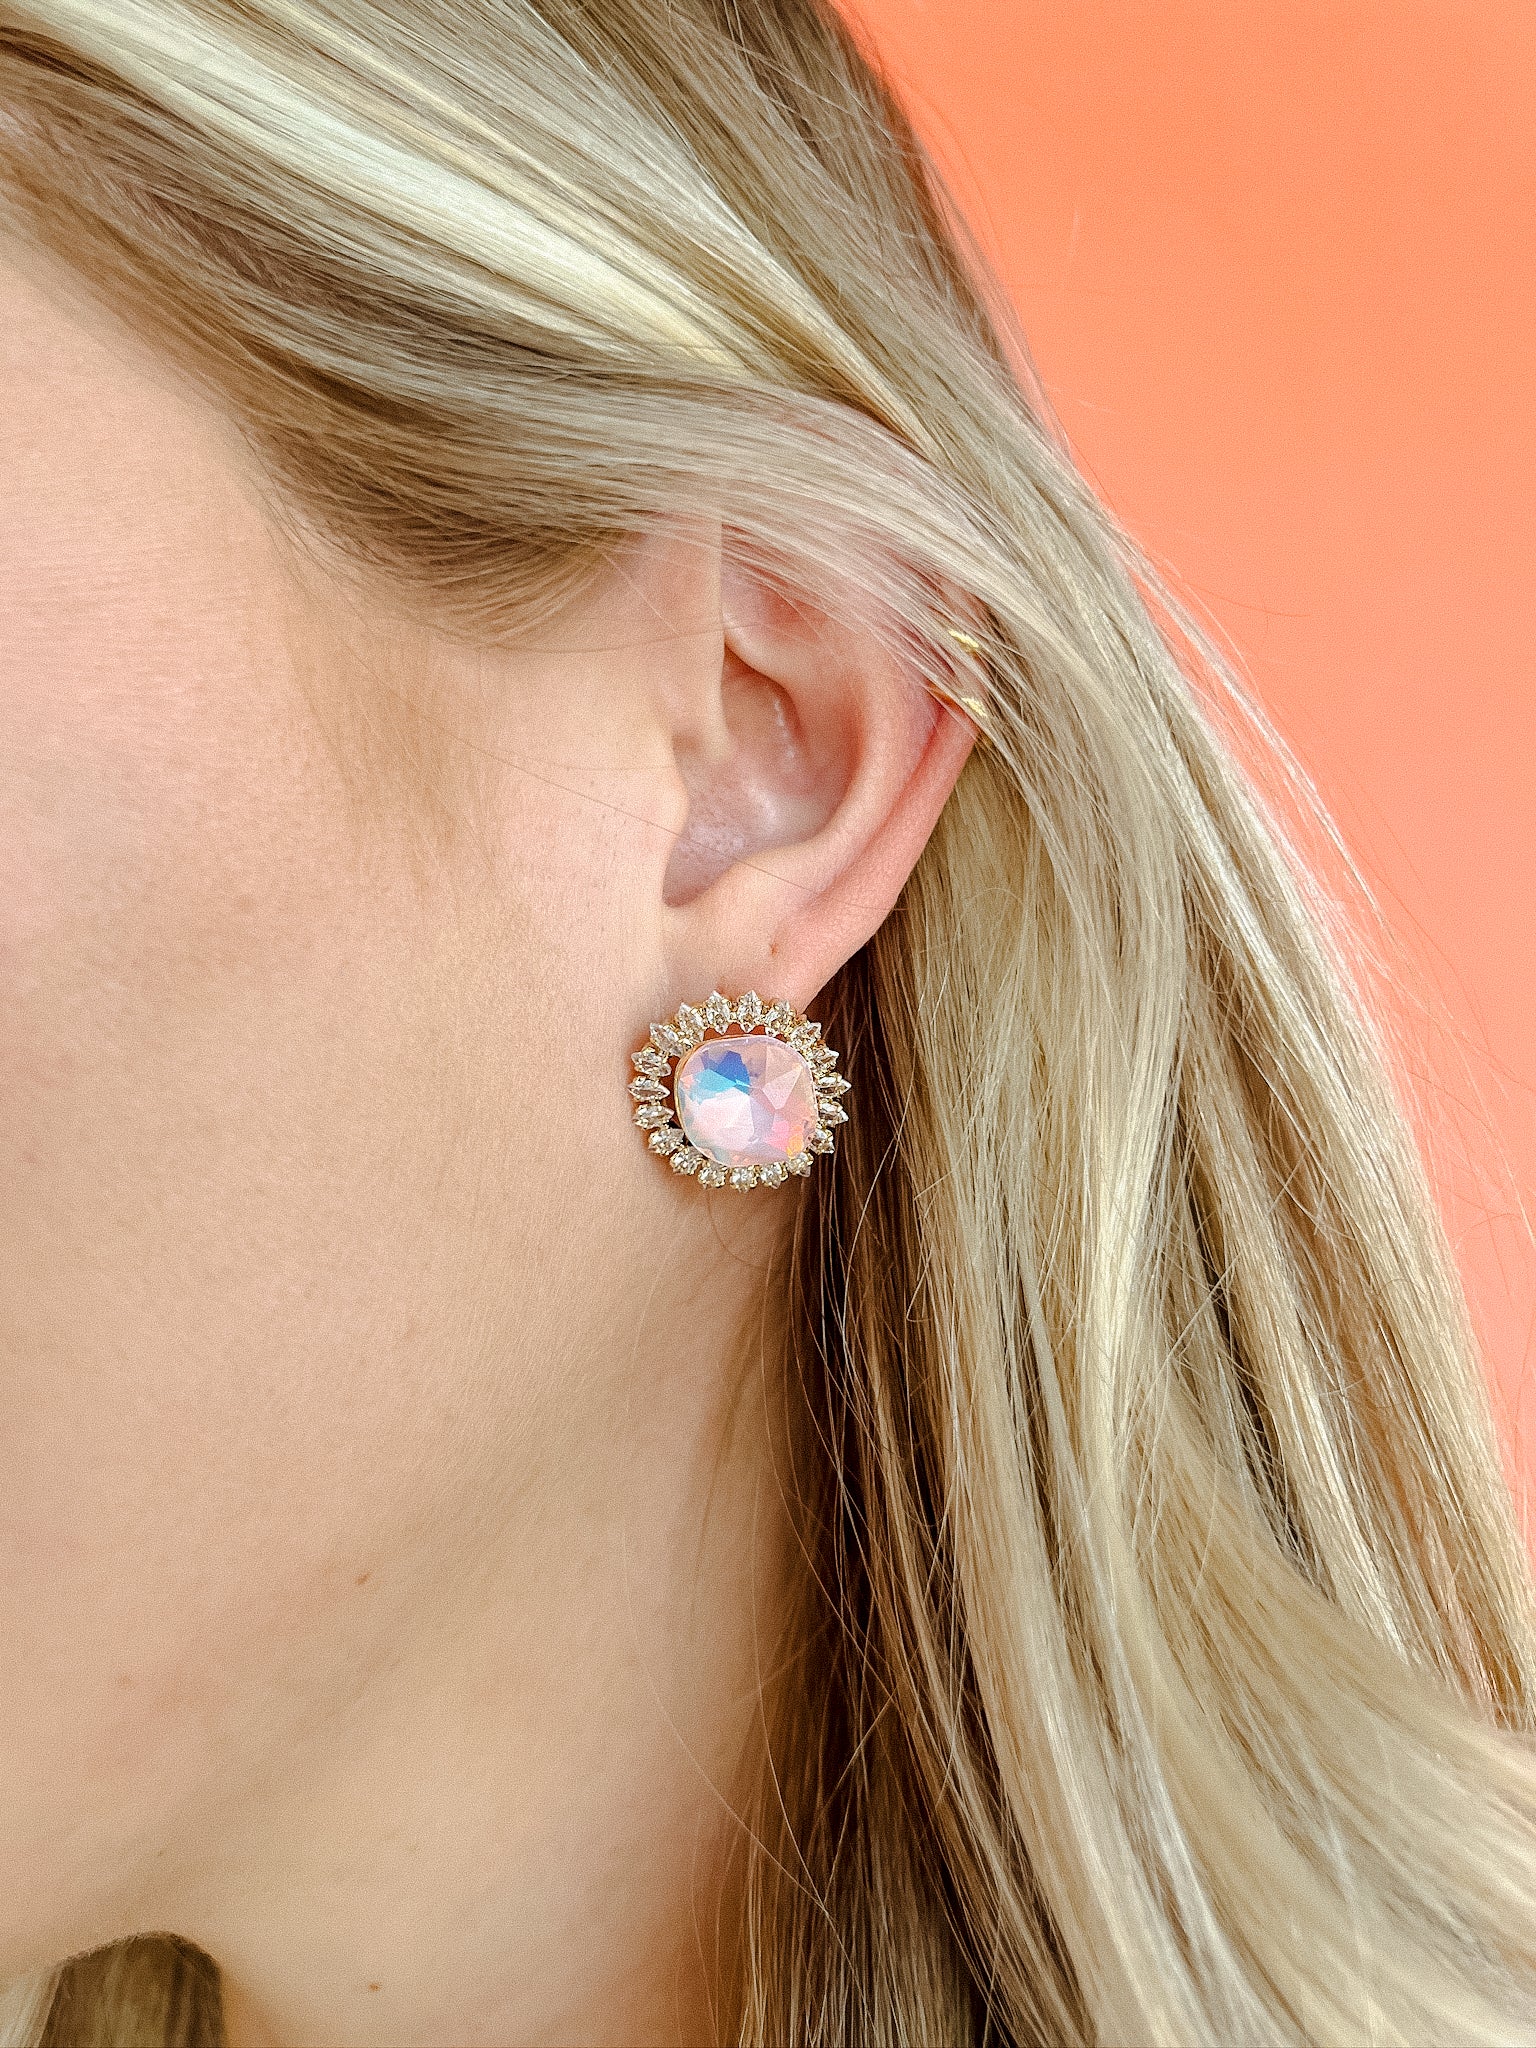 [Treasure Jewels] Always Essential Gem Stud Earrings - Gold + Geranium Pink + Turquoise